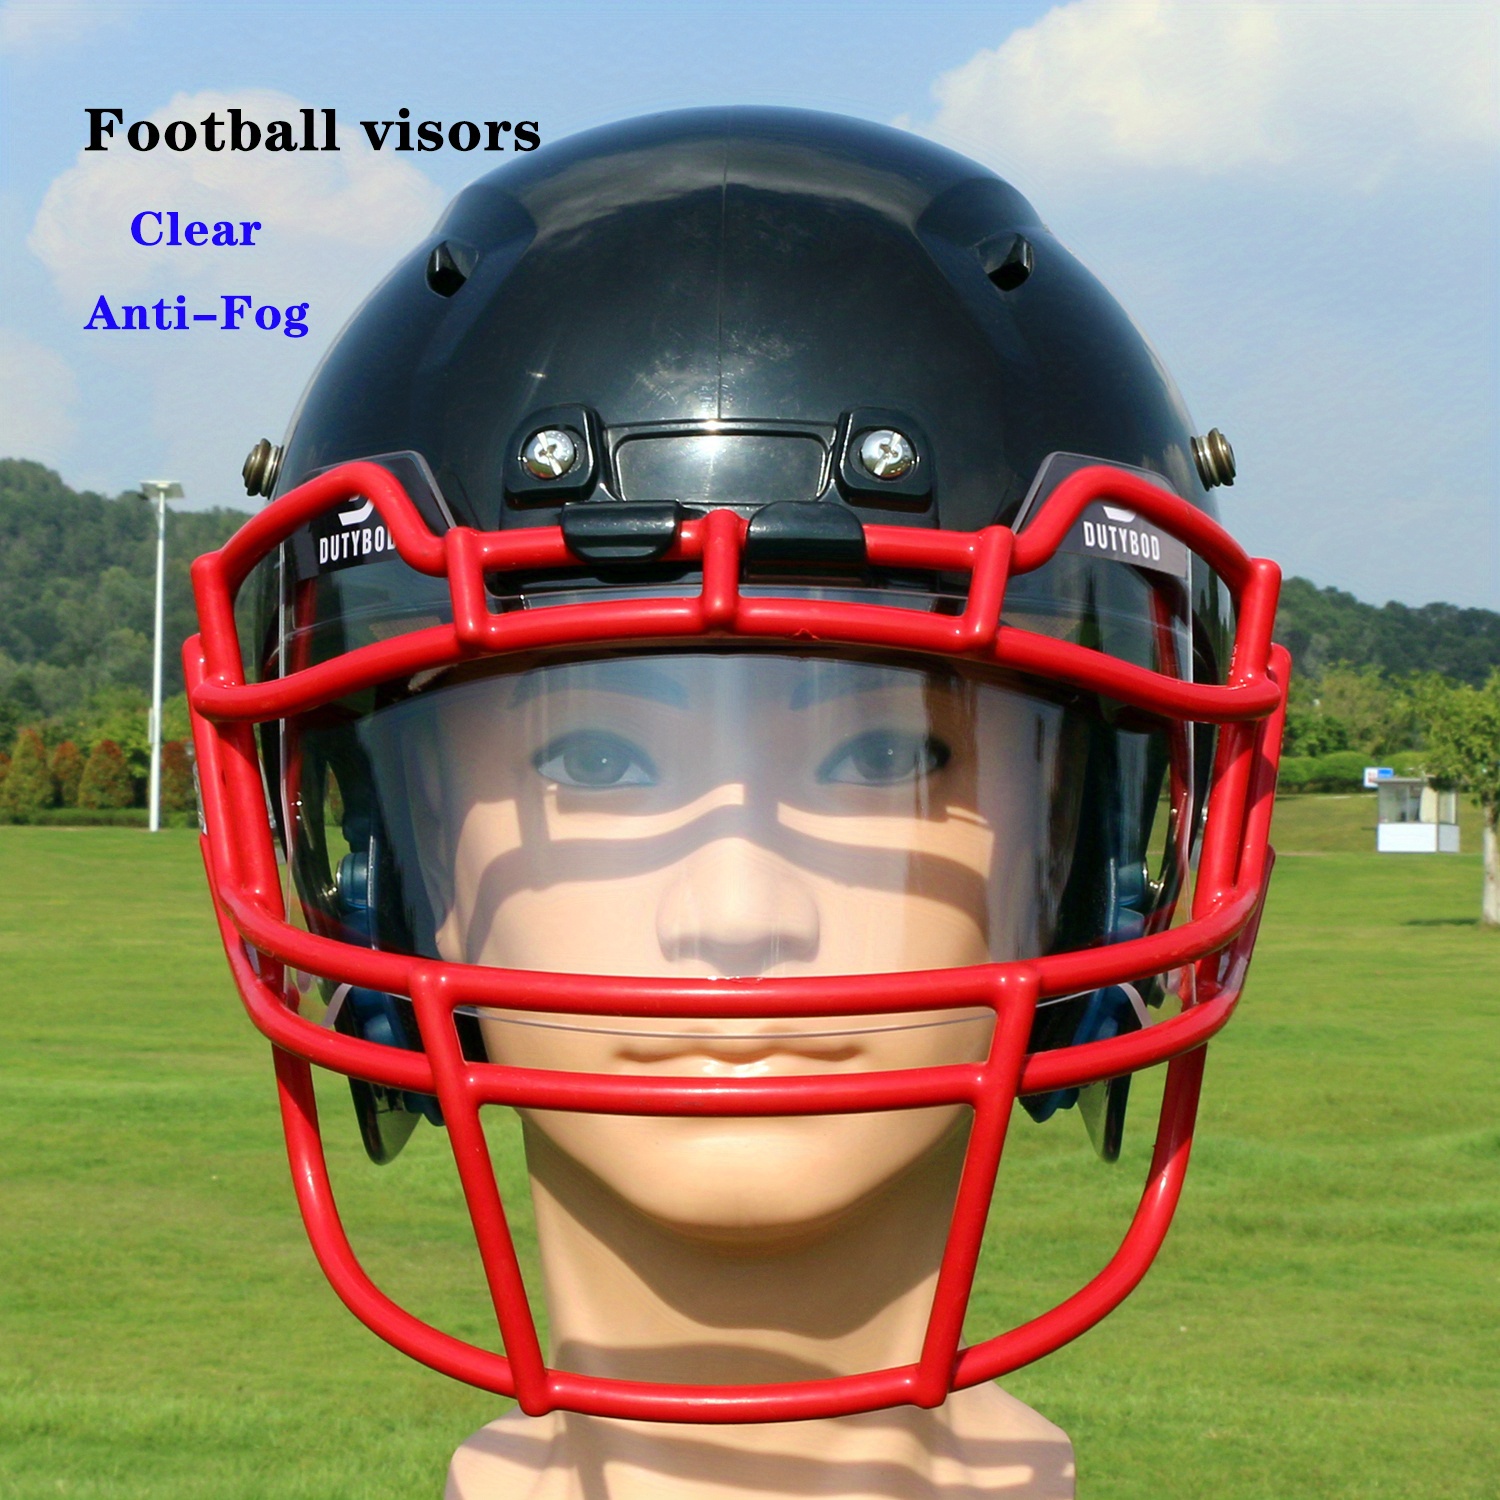 Sales Today Clearance Clear Anti-fog Football Helmet Visor